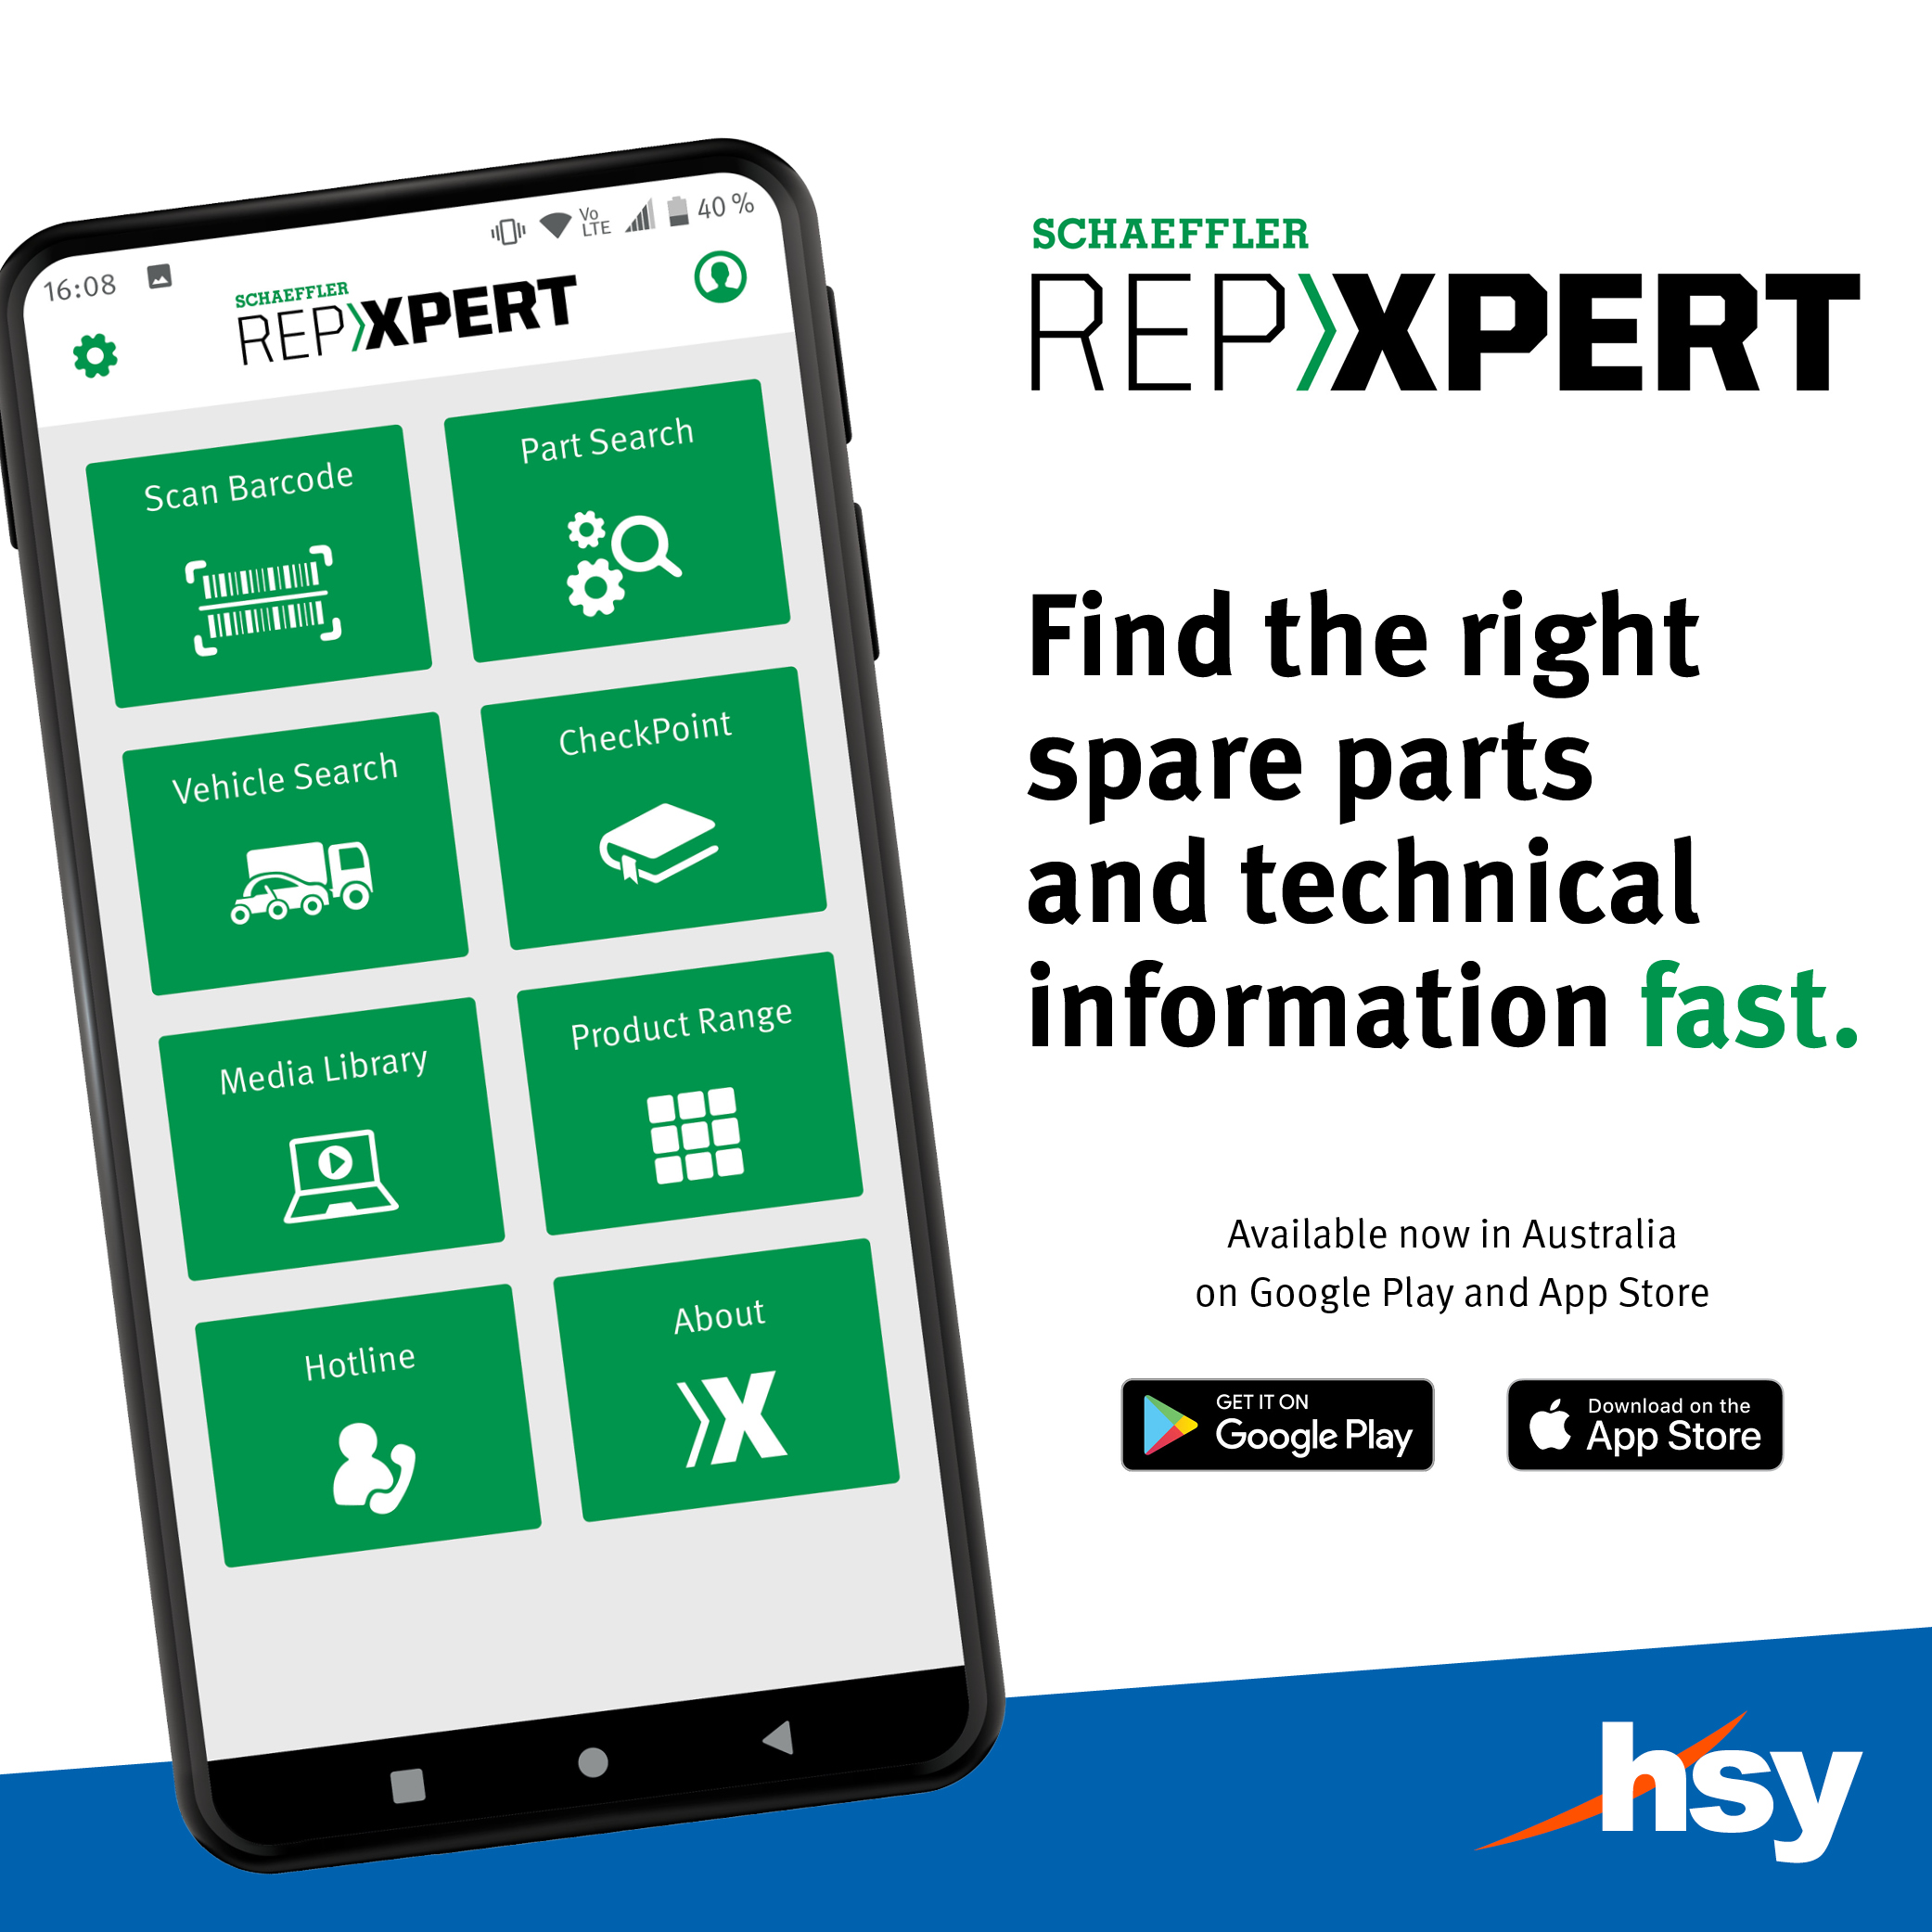 Schaeffler launches new REPXPERT App!